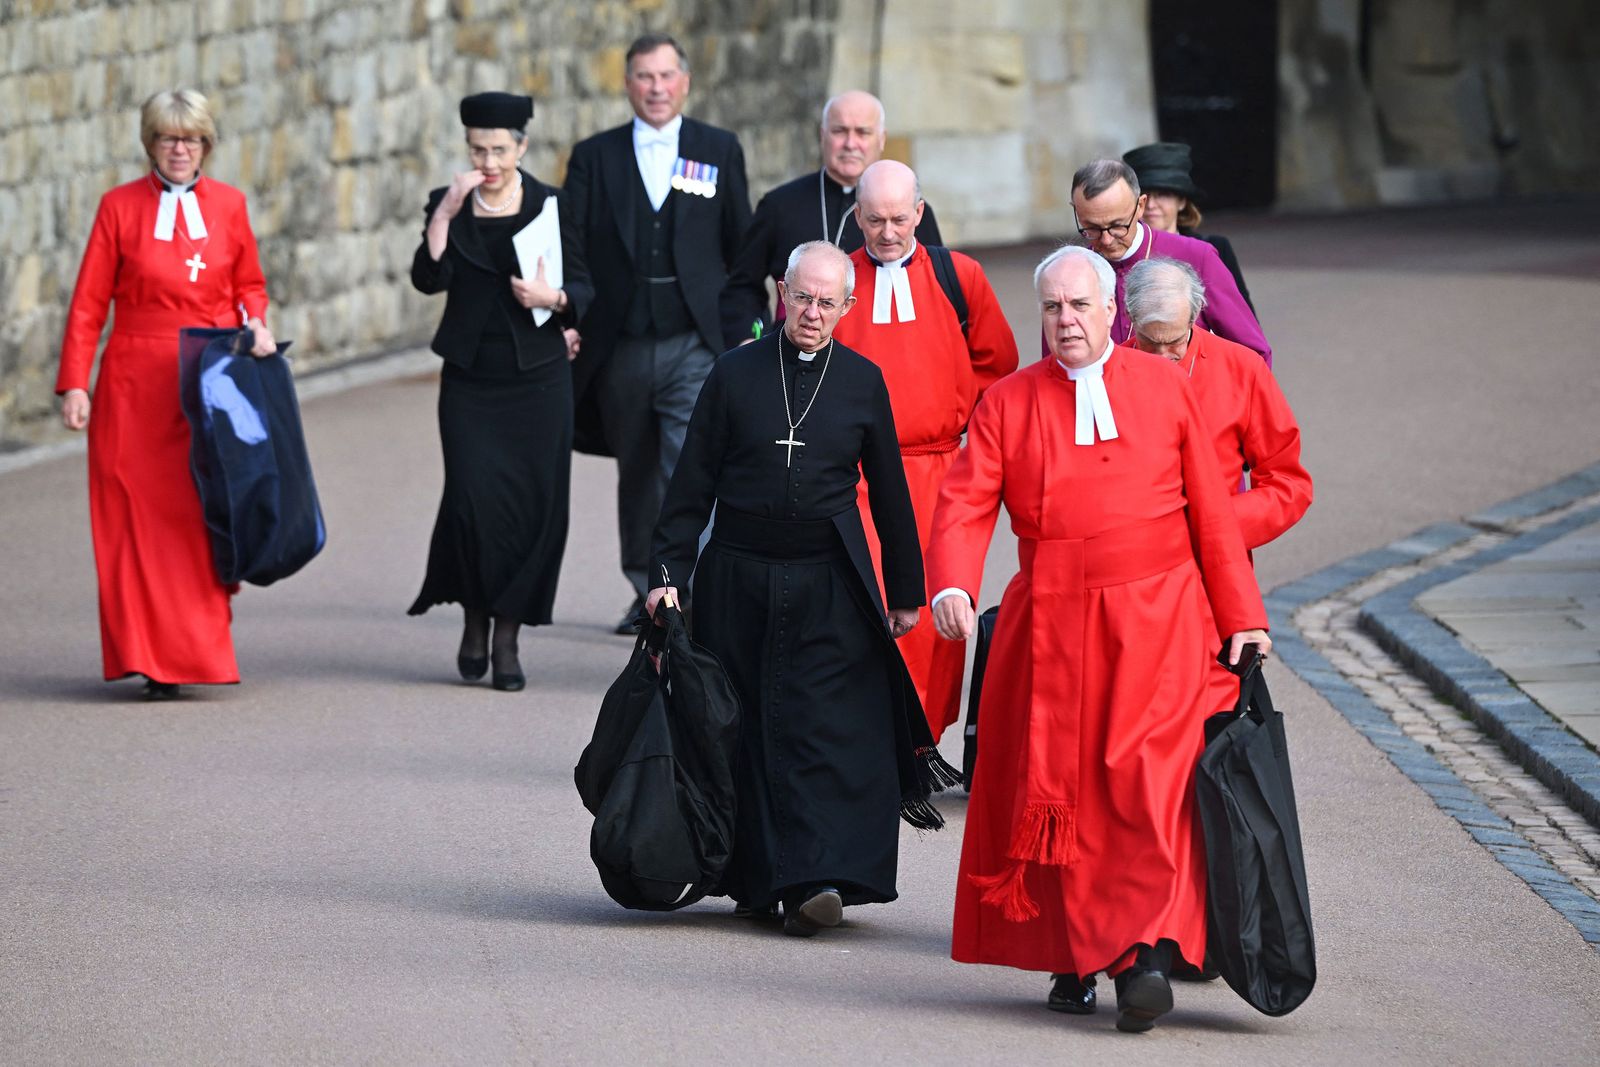 رئيس أساقفة كانتربري جاستين ويلبي وأعضاء آخرين من رجال كنيسة يغادرون بعد انتهاء مراسم جنازة الملكة إليزابيث الثانية في لندن - AFP